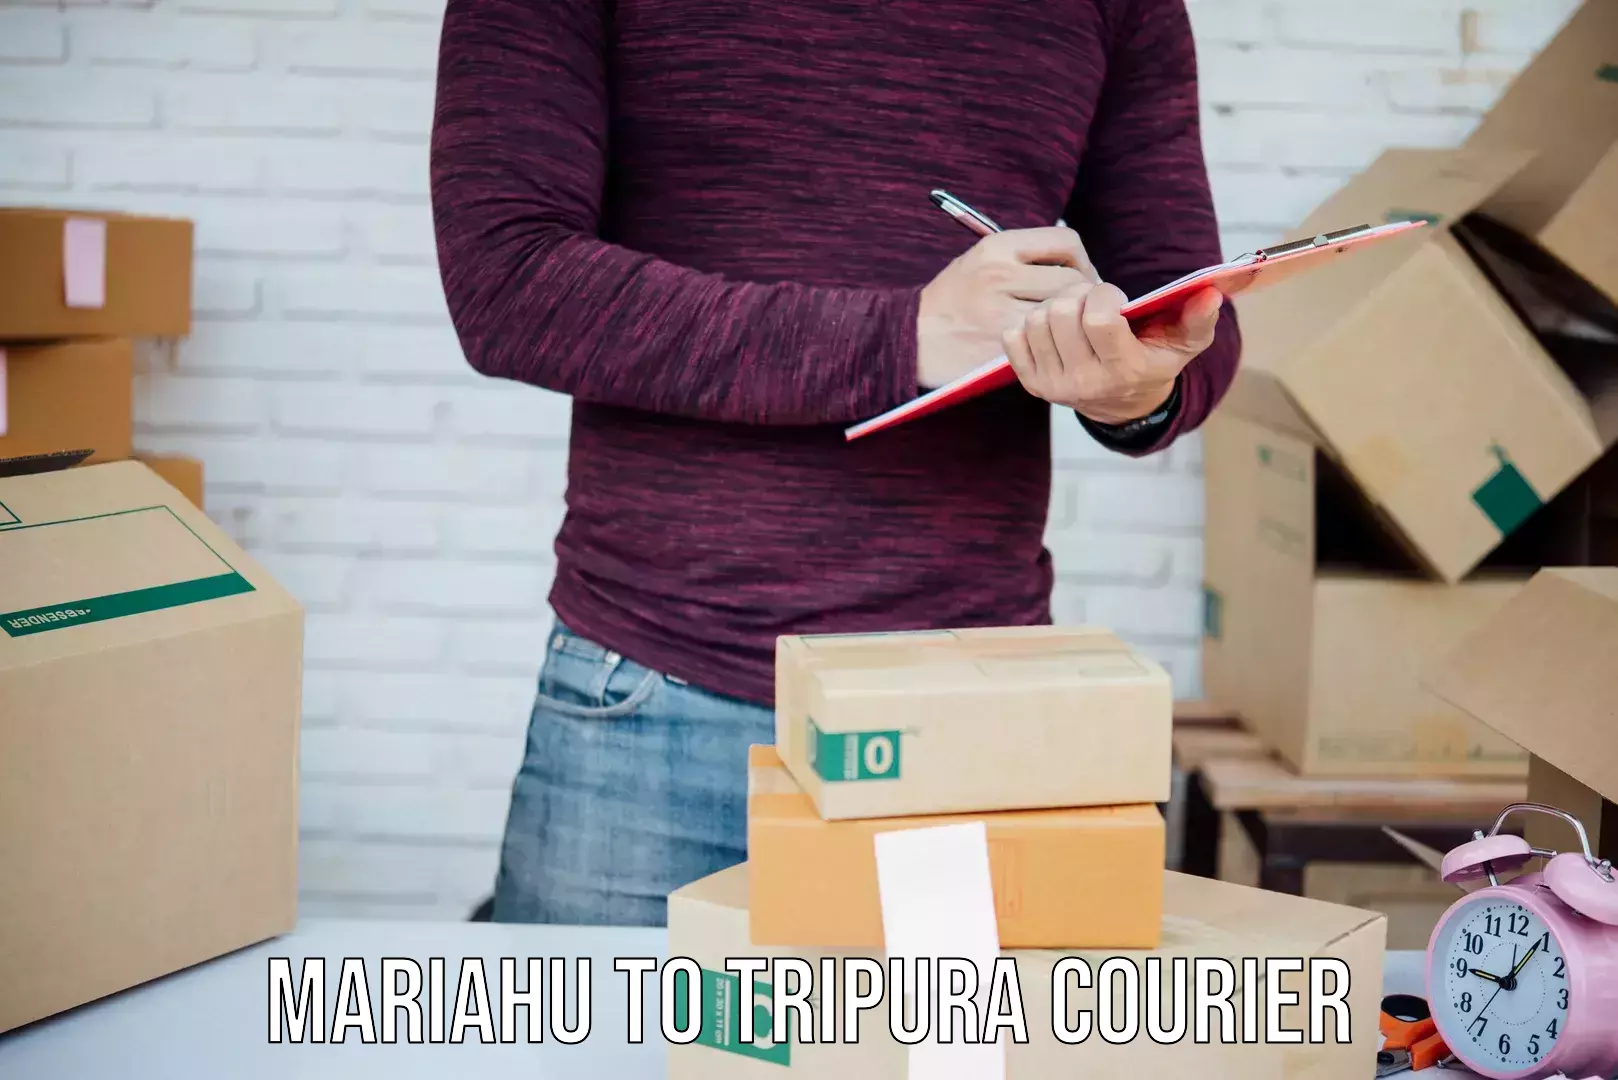 Return courier service Mariahu to Tripura